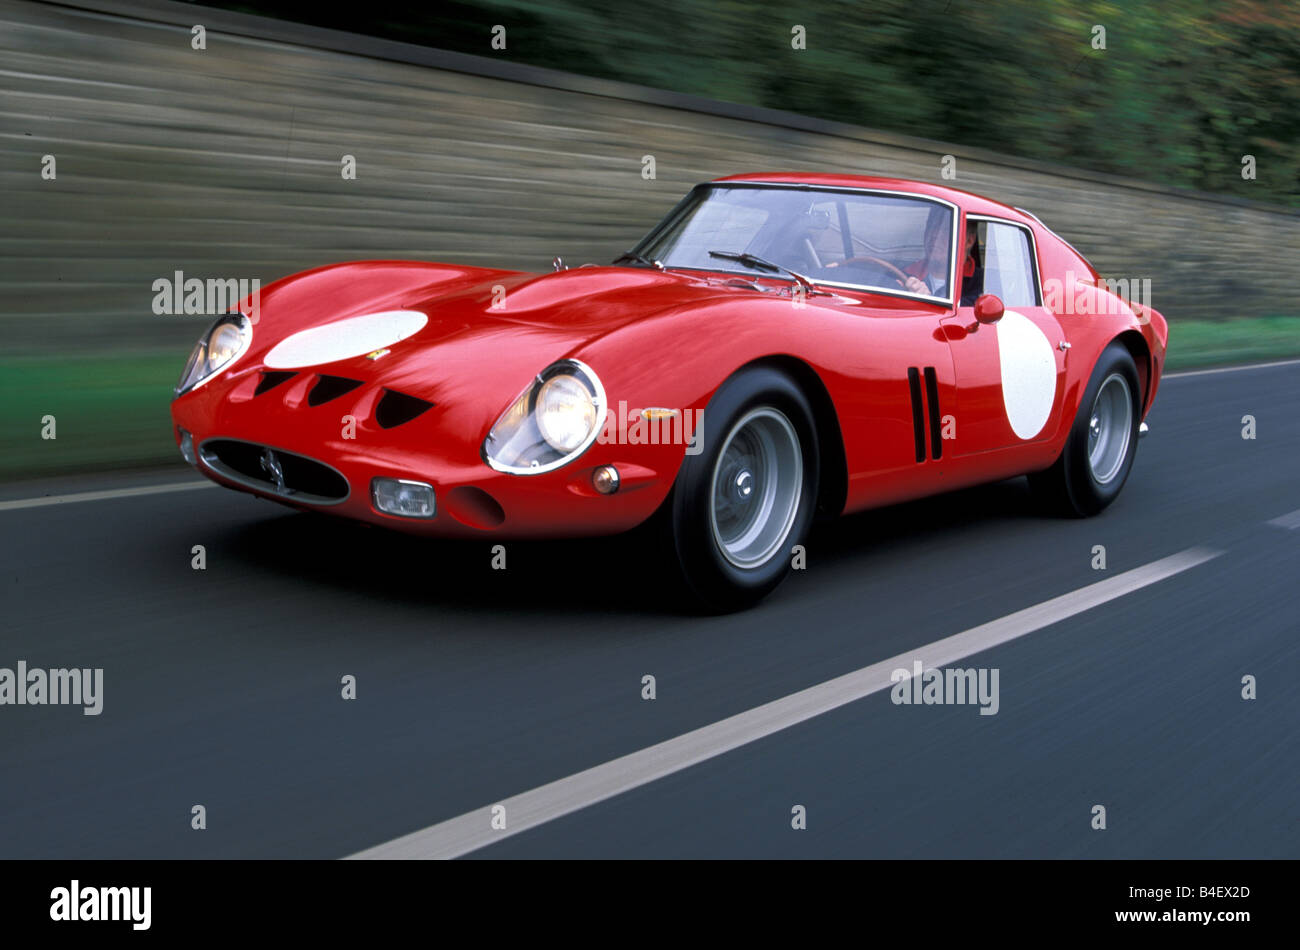 Voiture, Ferrari 250 GTO, l'année de modèle 1964, 1960, 1960, vintage car, voiture de sport, coupé, cabriolet, rouge, la conduite, la diagonale, avant Banque D'Images